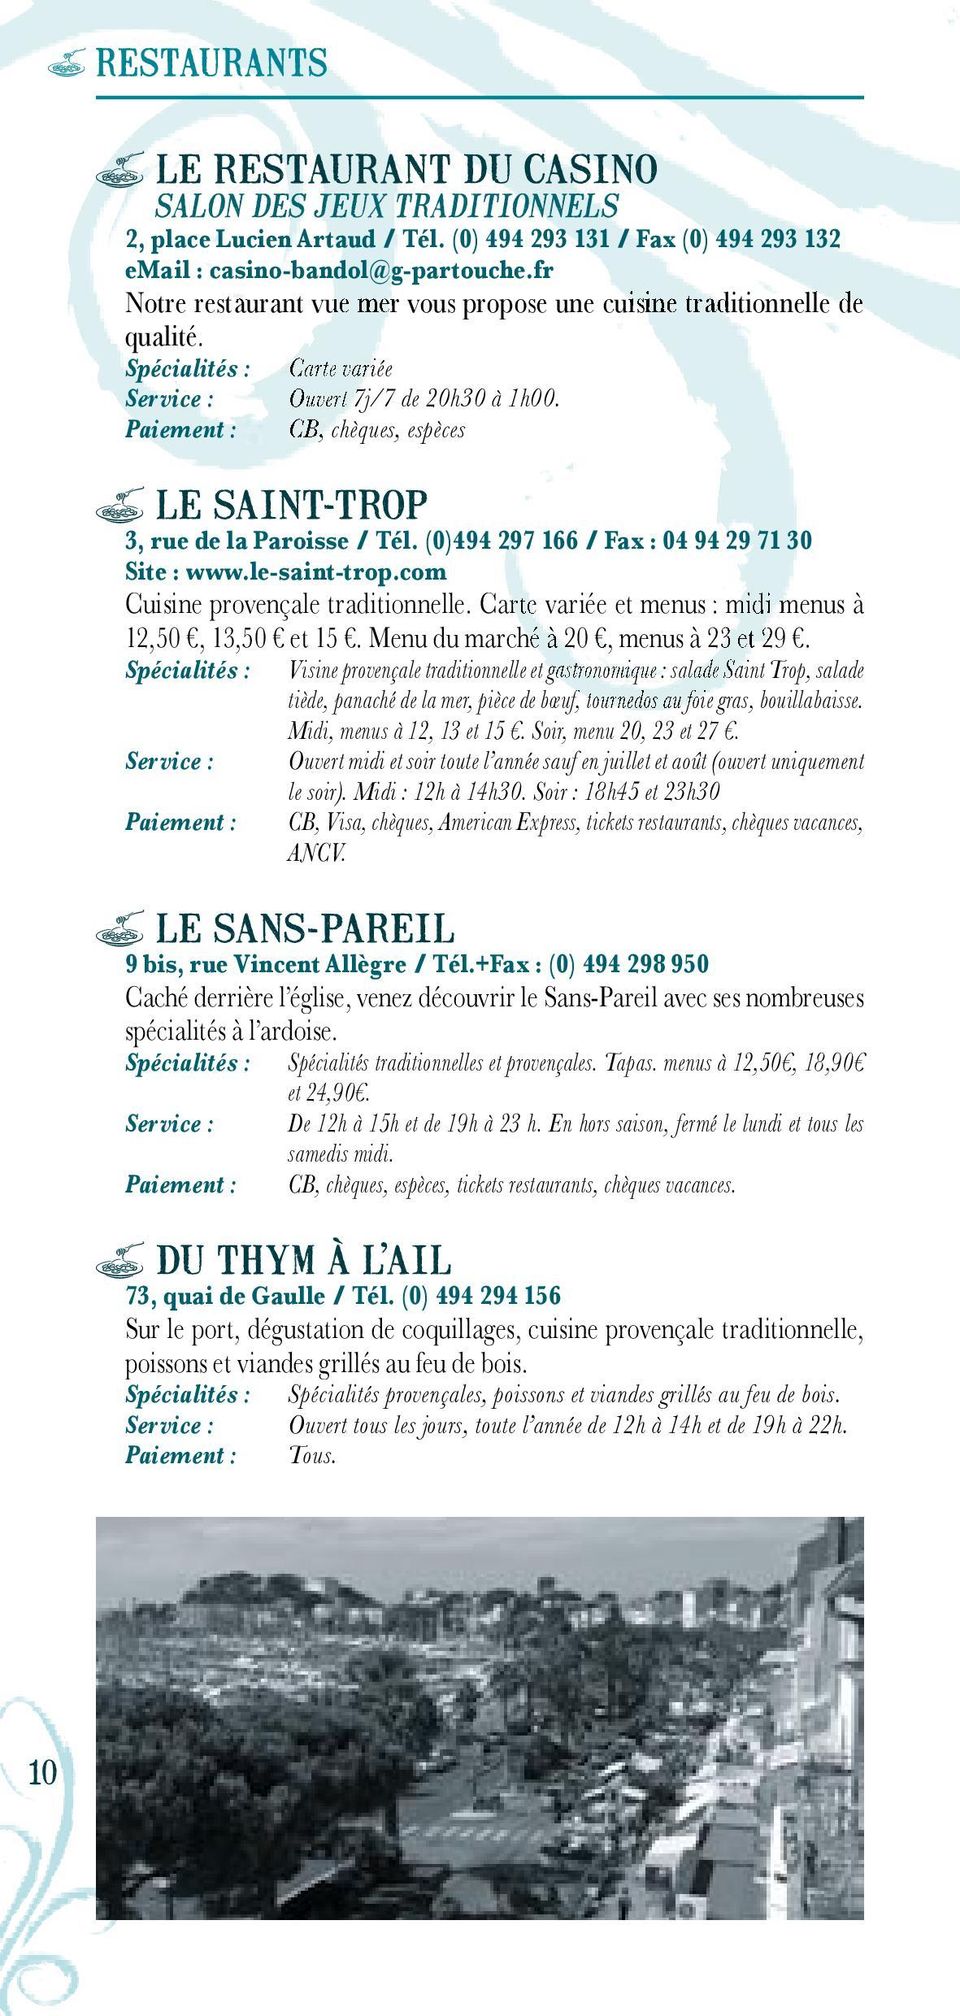 (0)494 297 166 / Fax : 04 94 29 71 30 Site : www.le-saint-trop.com Cuisine provençale traditionnelle. Carte variée et menus : midi menus à 12,50, 13,50 et 15. Menu du marché à 20, menus à 23 et 29.